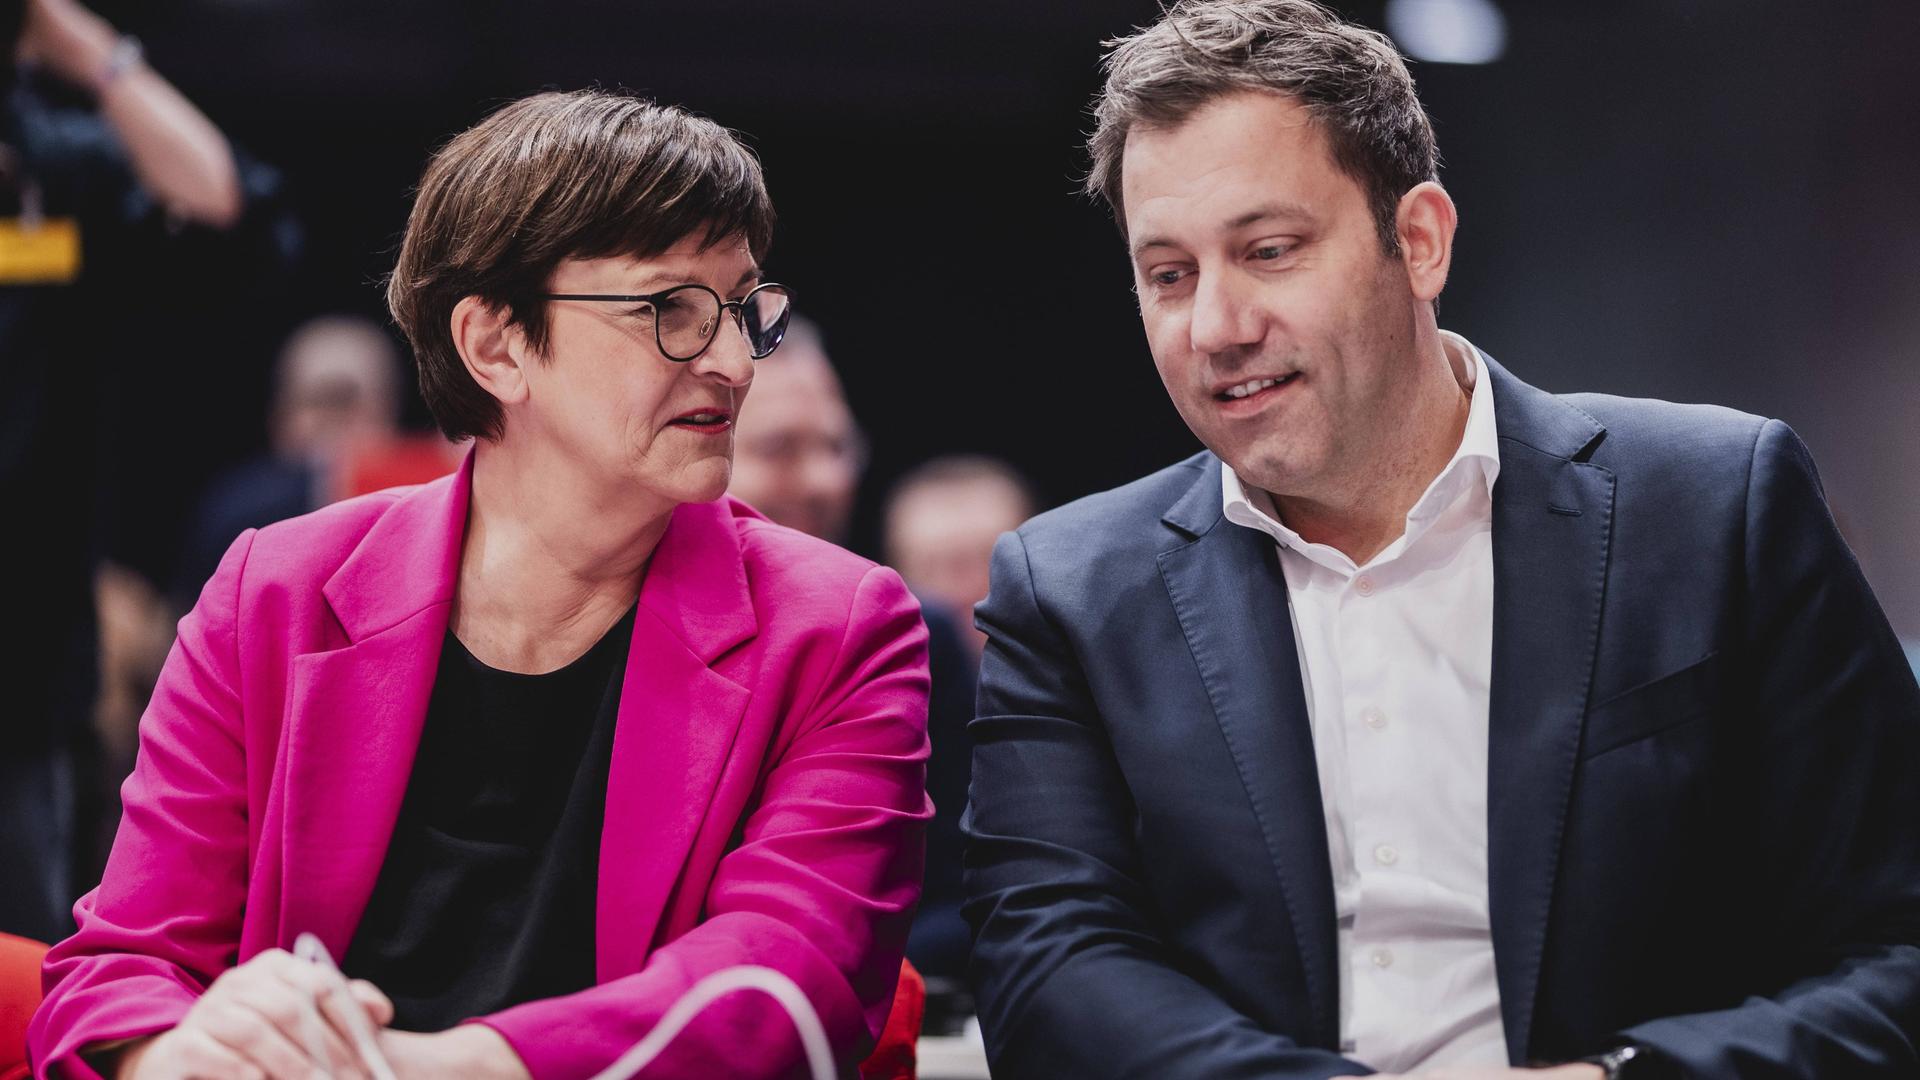 Saskia Esken, Bundesvorsitzender der SPD, und Lars Klingbeil, SPD-Parteivorsitzender, aufgenommen im Rahmen des Bundesparteitages des Sozialdemokratische Partei Deutschland SPD in Berlin.